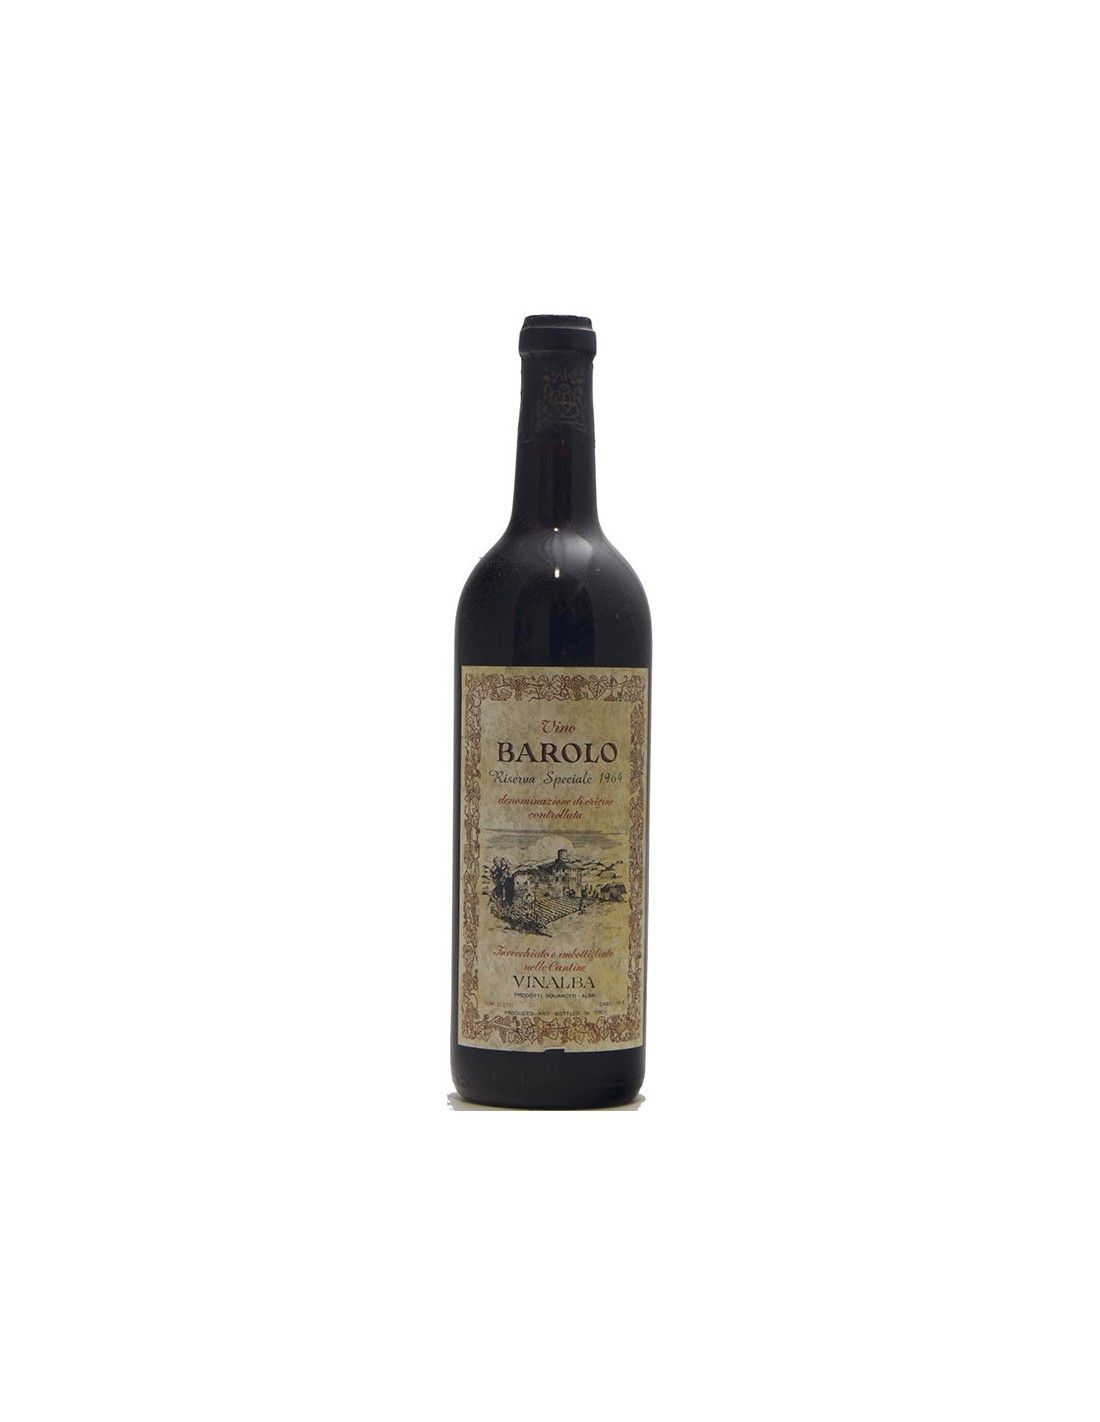 BAROLO RISERVA SPECIALE 1964 VINALBA Grandi Bottiglie